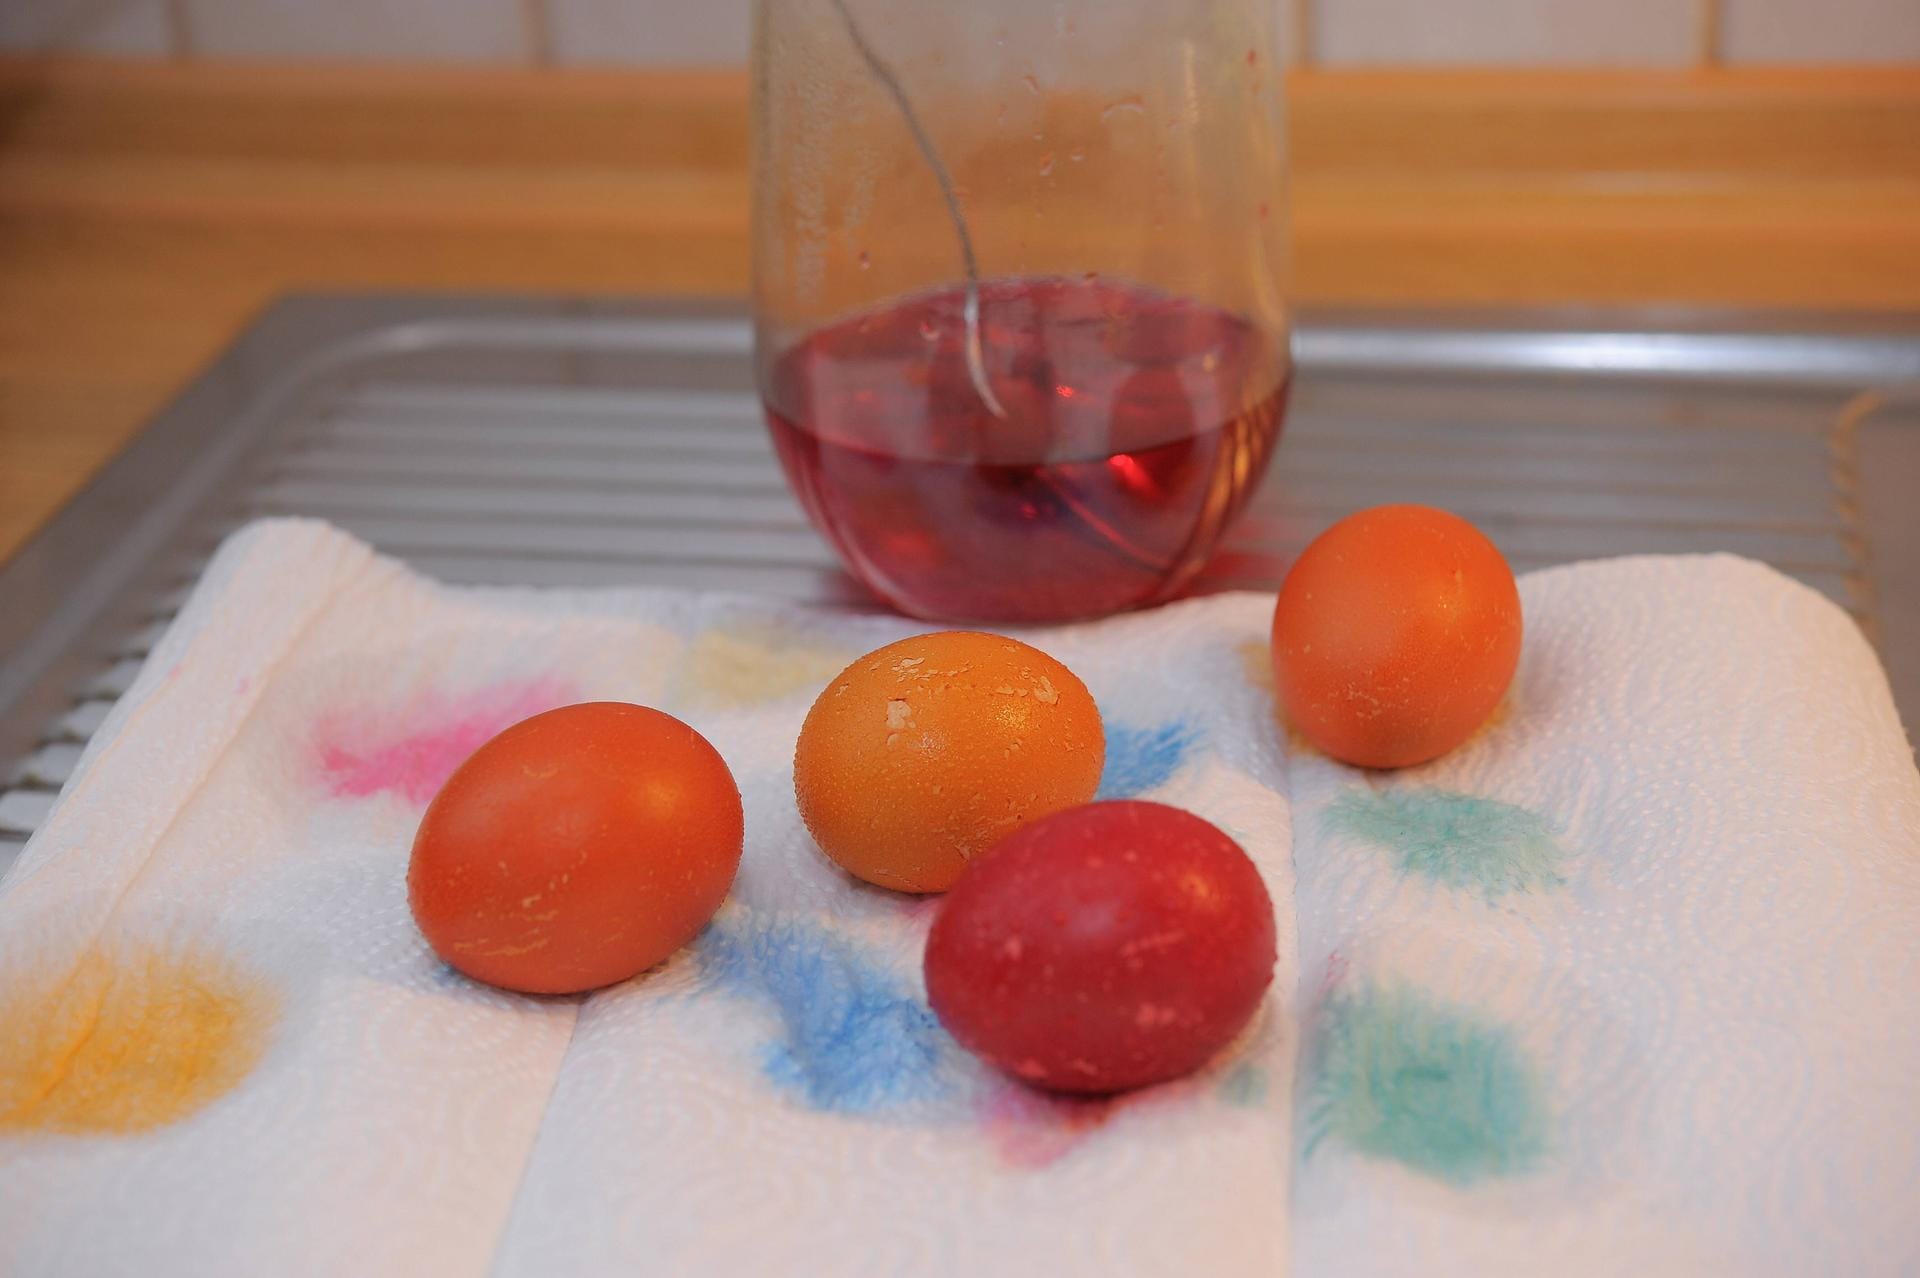 Ostereier trocknen: Lassen Sie die Eier nach dem Färben auf einem Küchentuch trocknen.